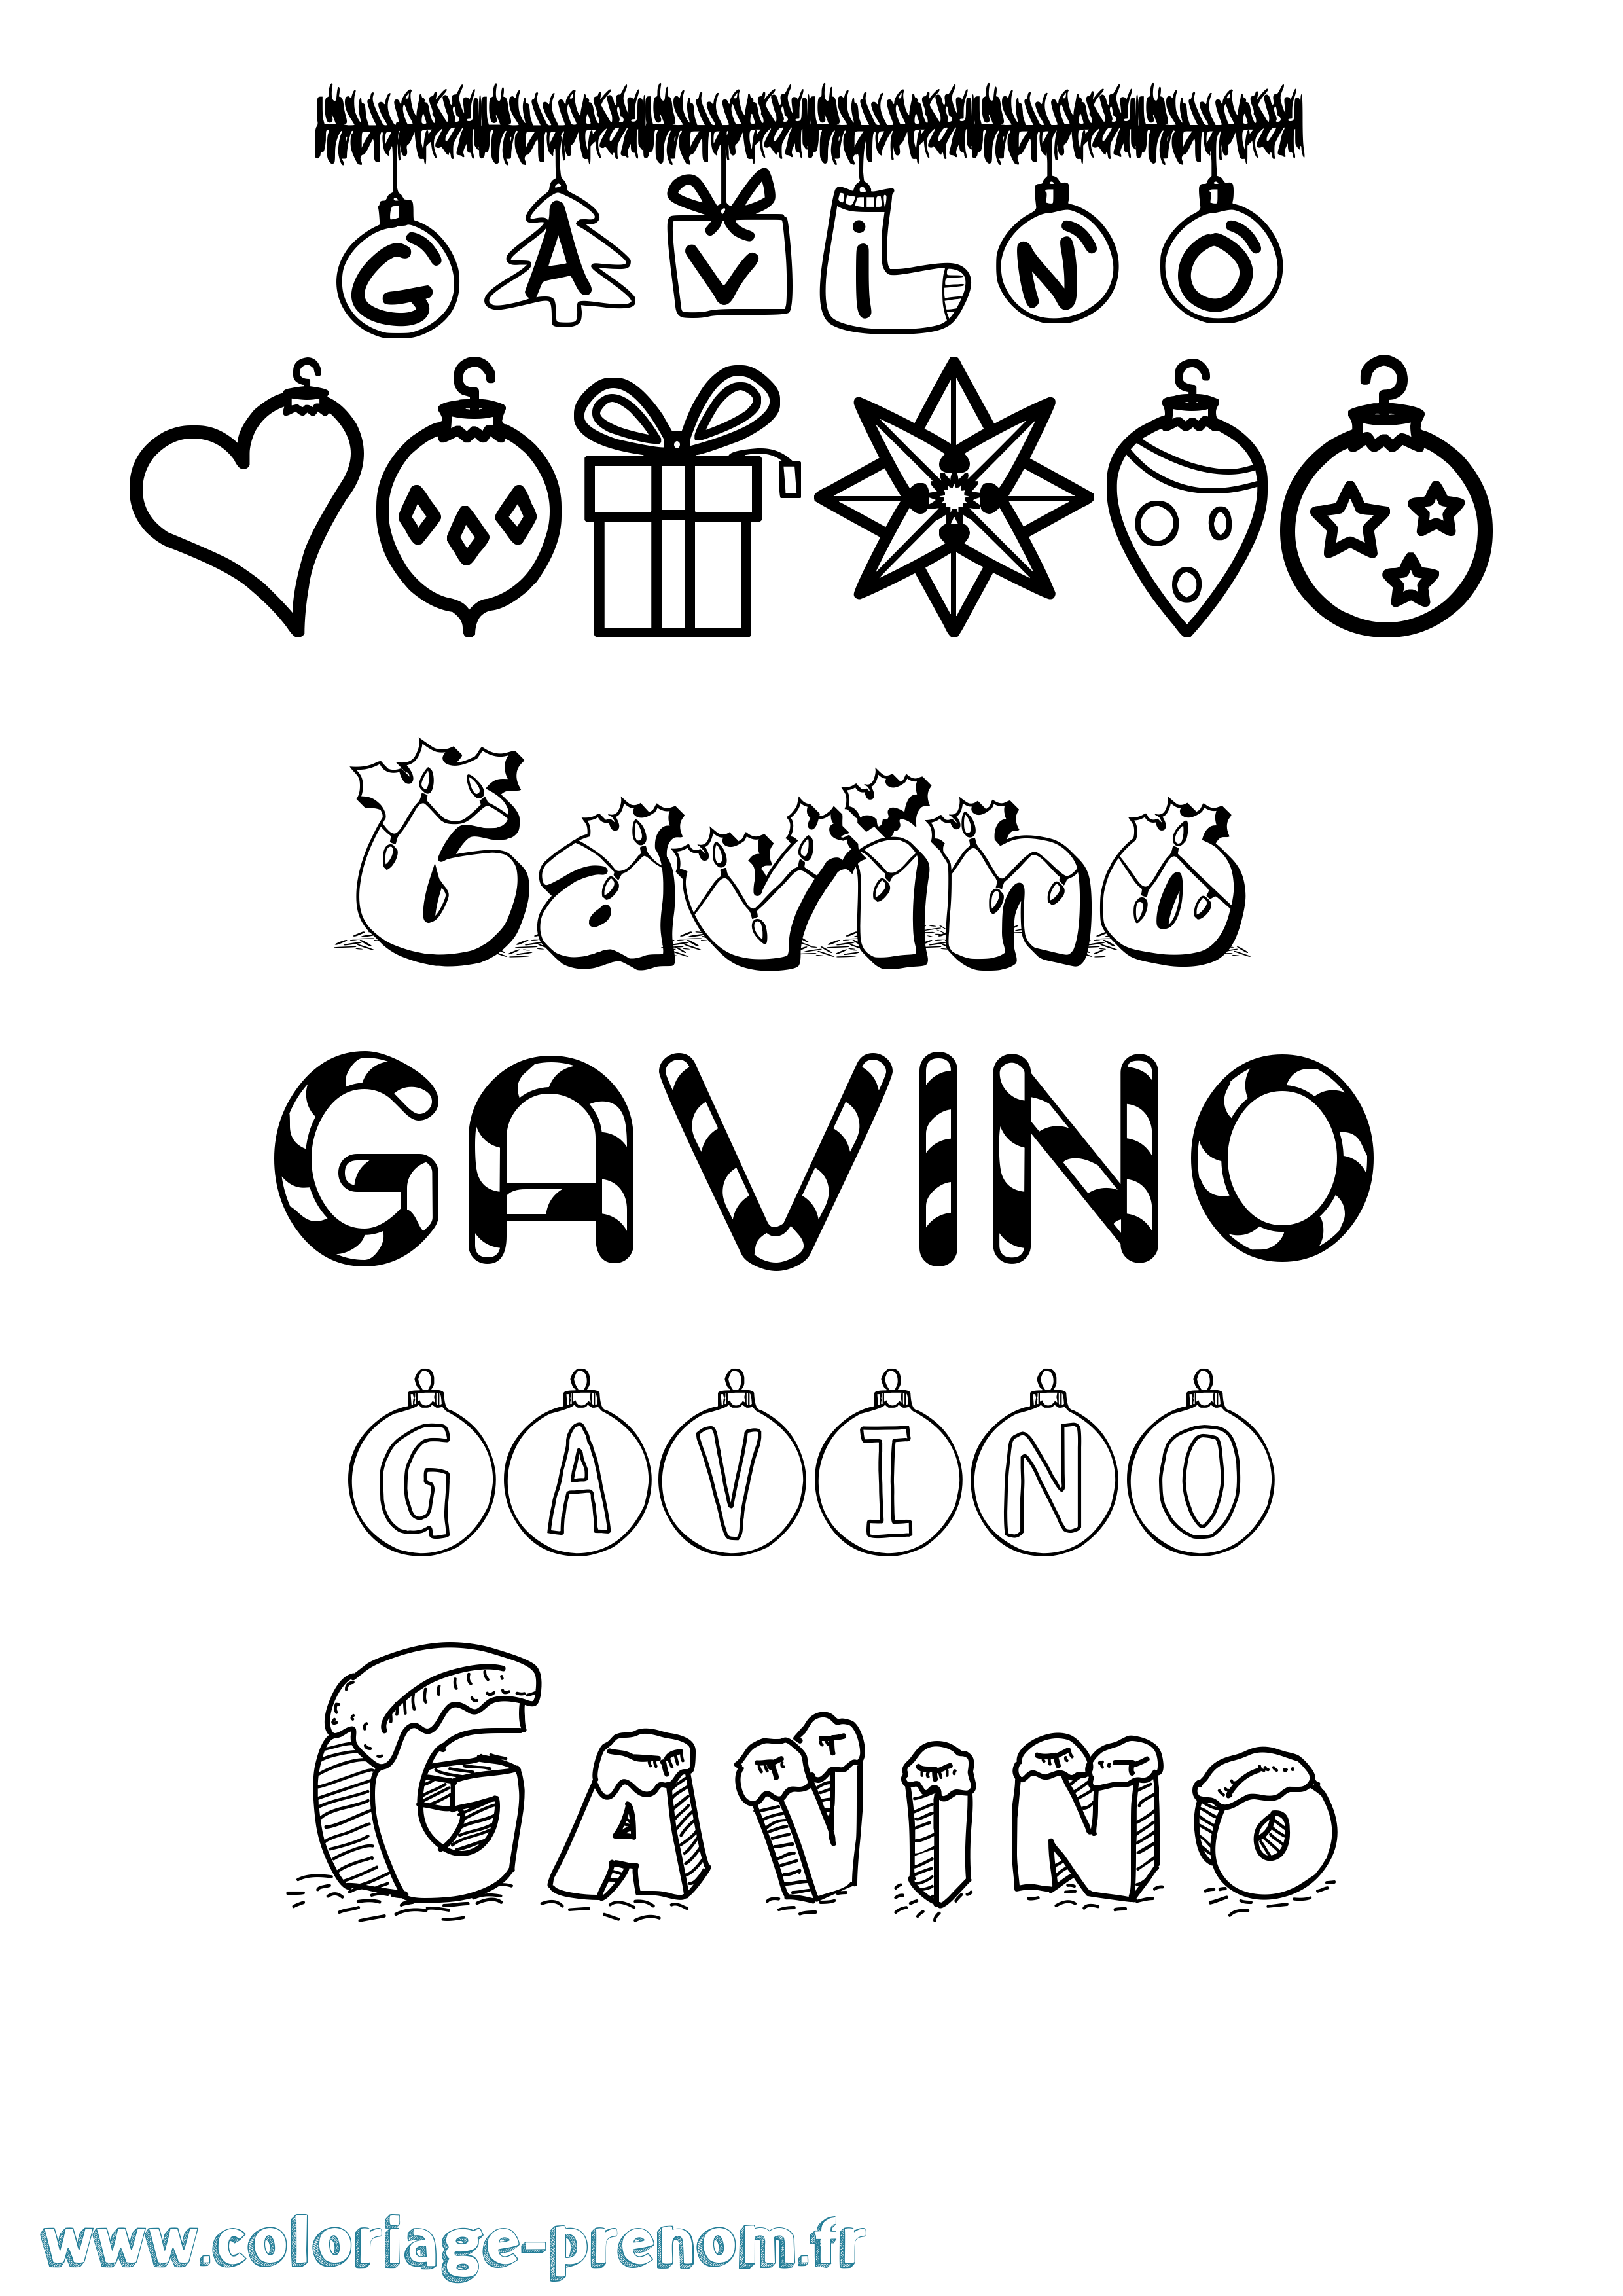 Coloriage prénom Gavino Noël